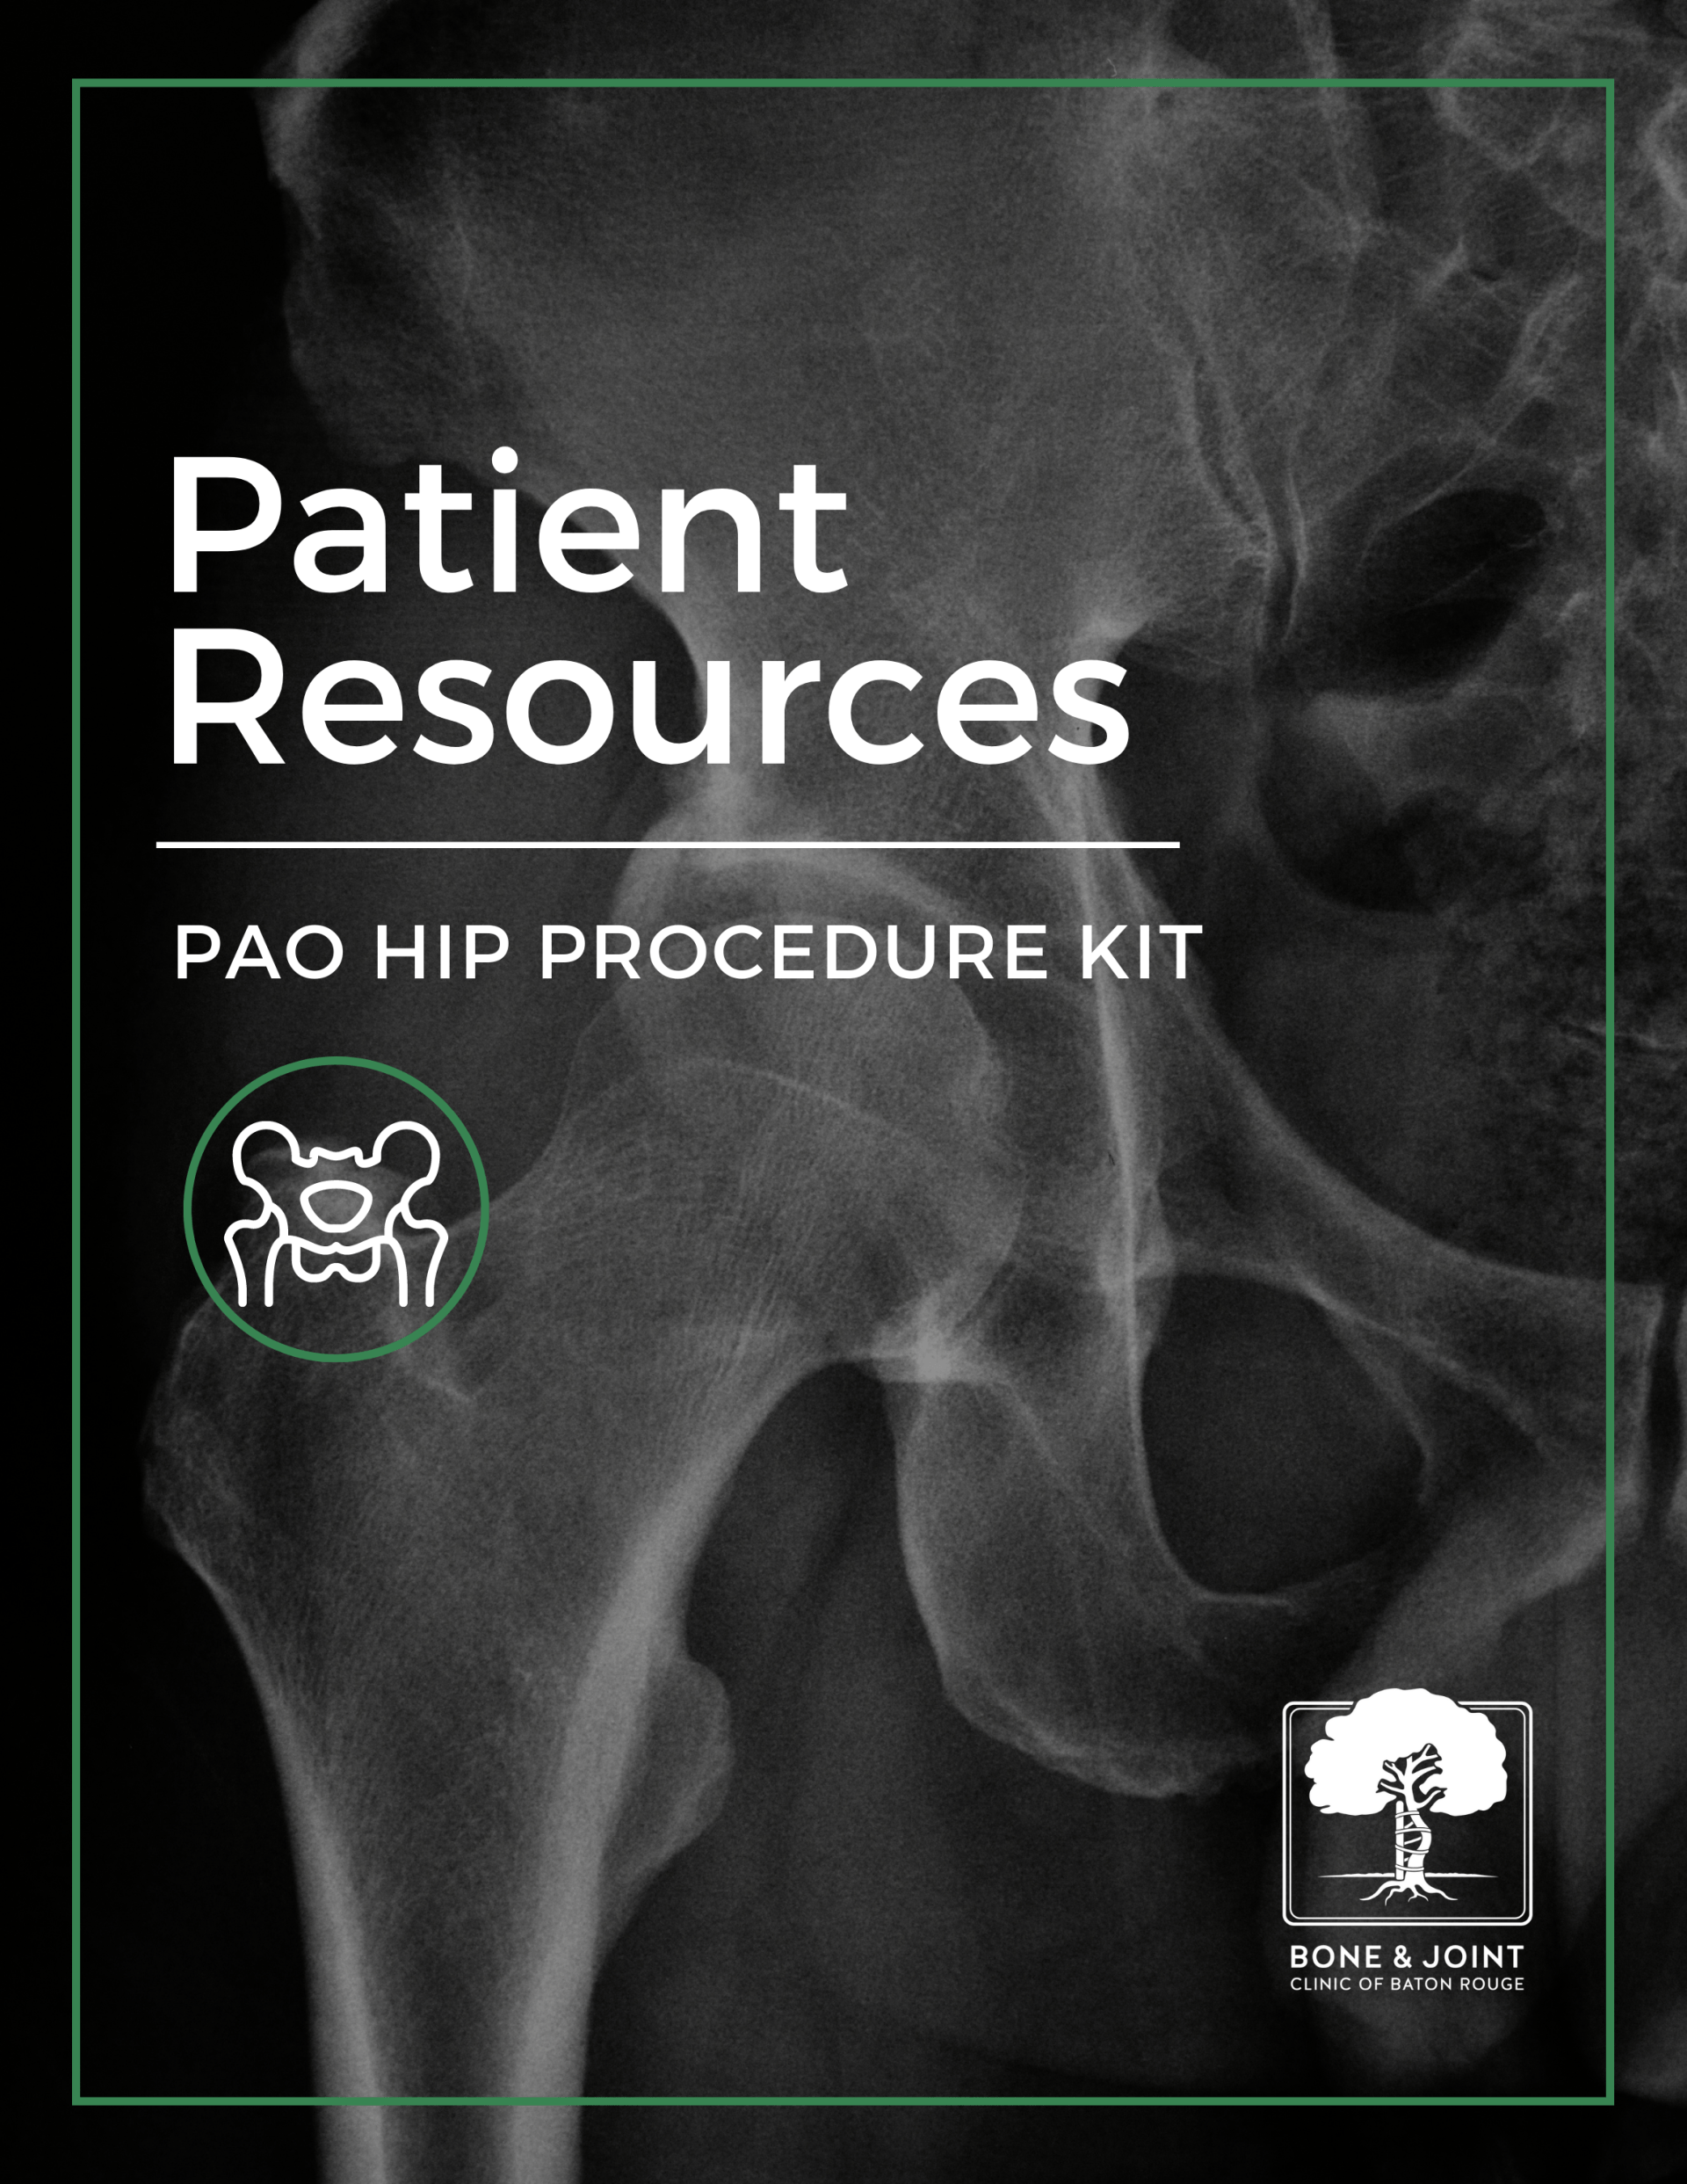 PAO hip procedure patient resource kit